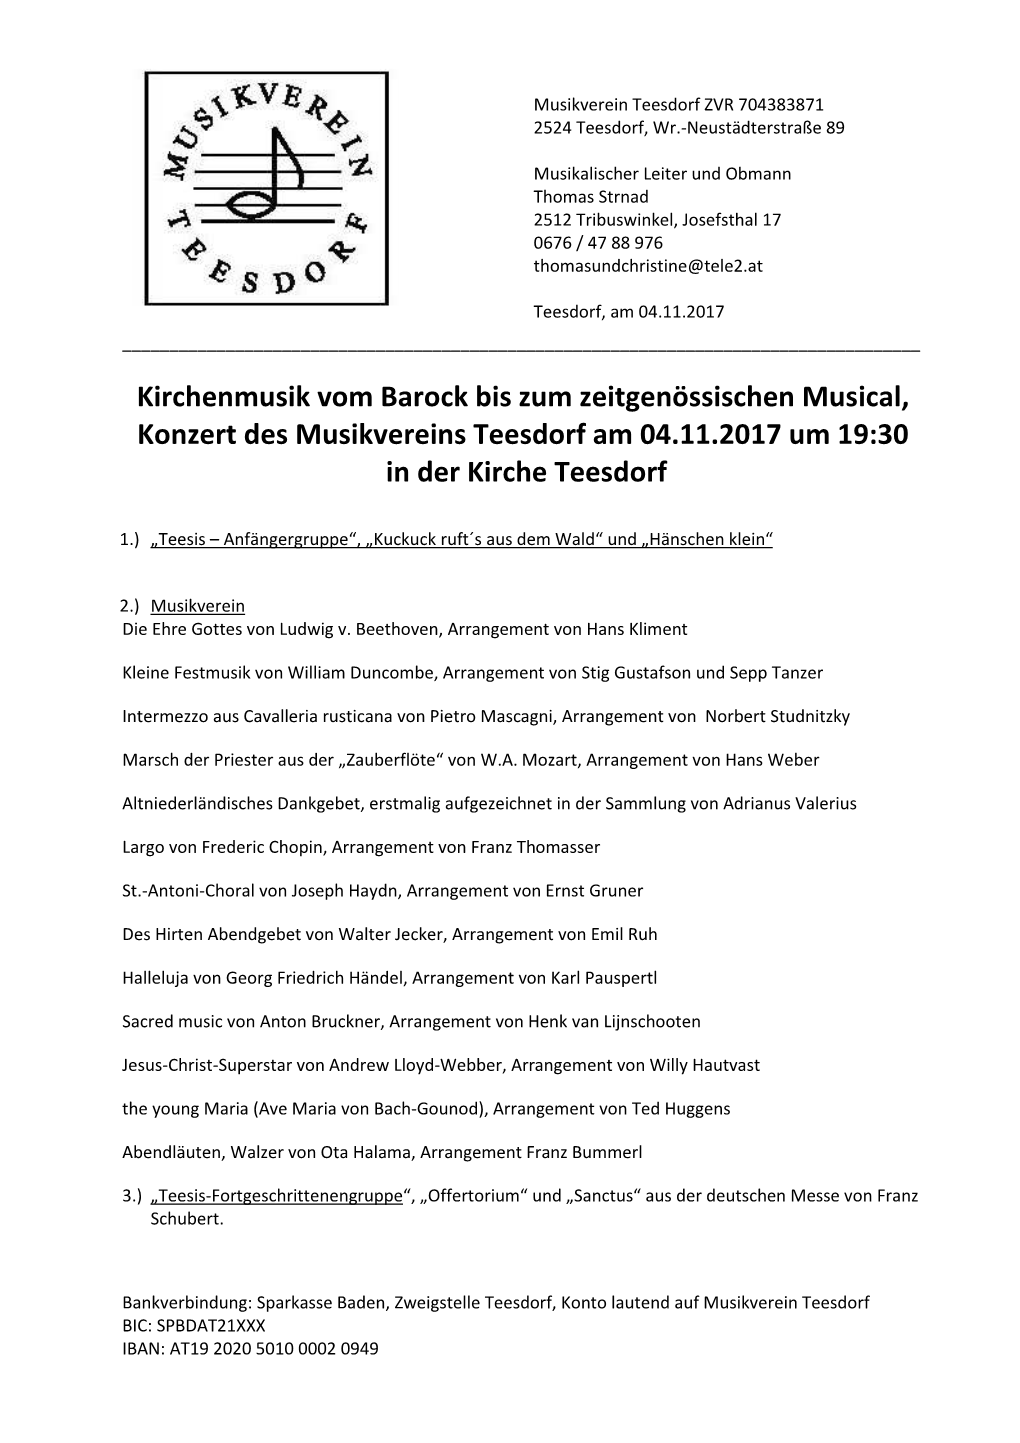 Kirchenmusik Vom Barock Bis Zum Zeitgenössischen Musical, Konzert Des Musikvereins Teesdorf Am 04.11.2017 Um 19:30 in Der Kirche Teesdorf